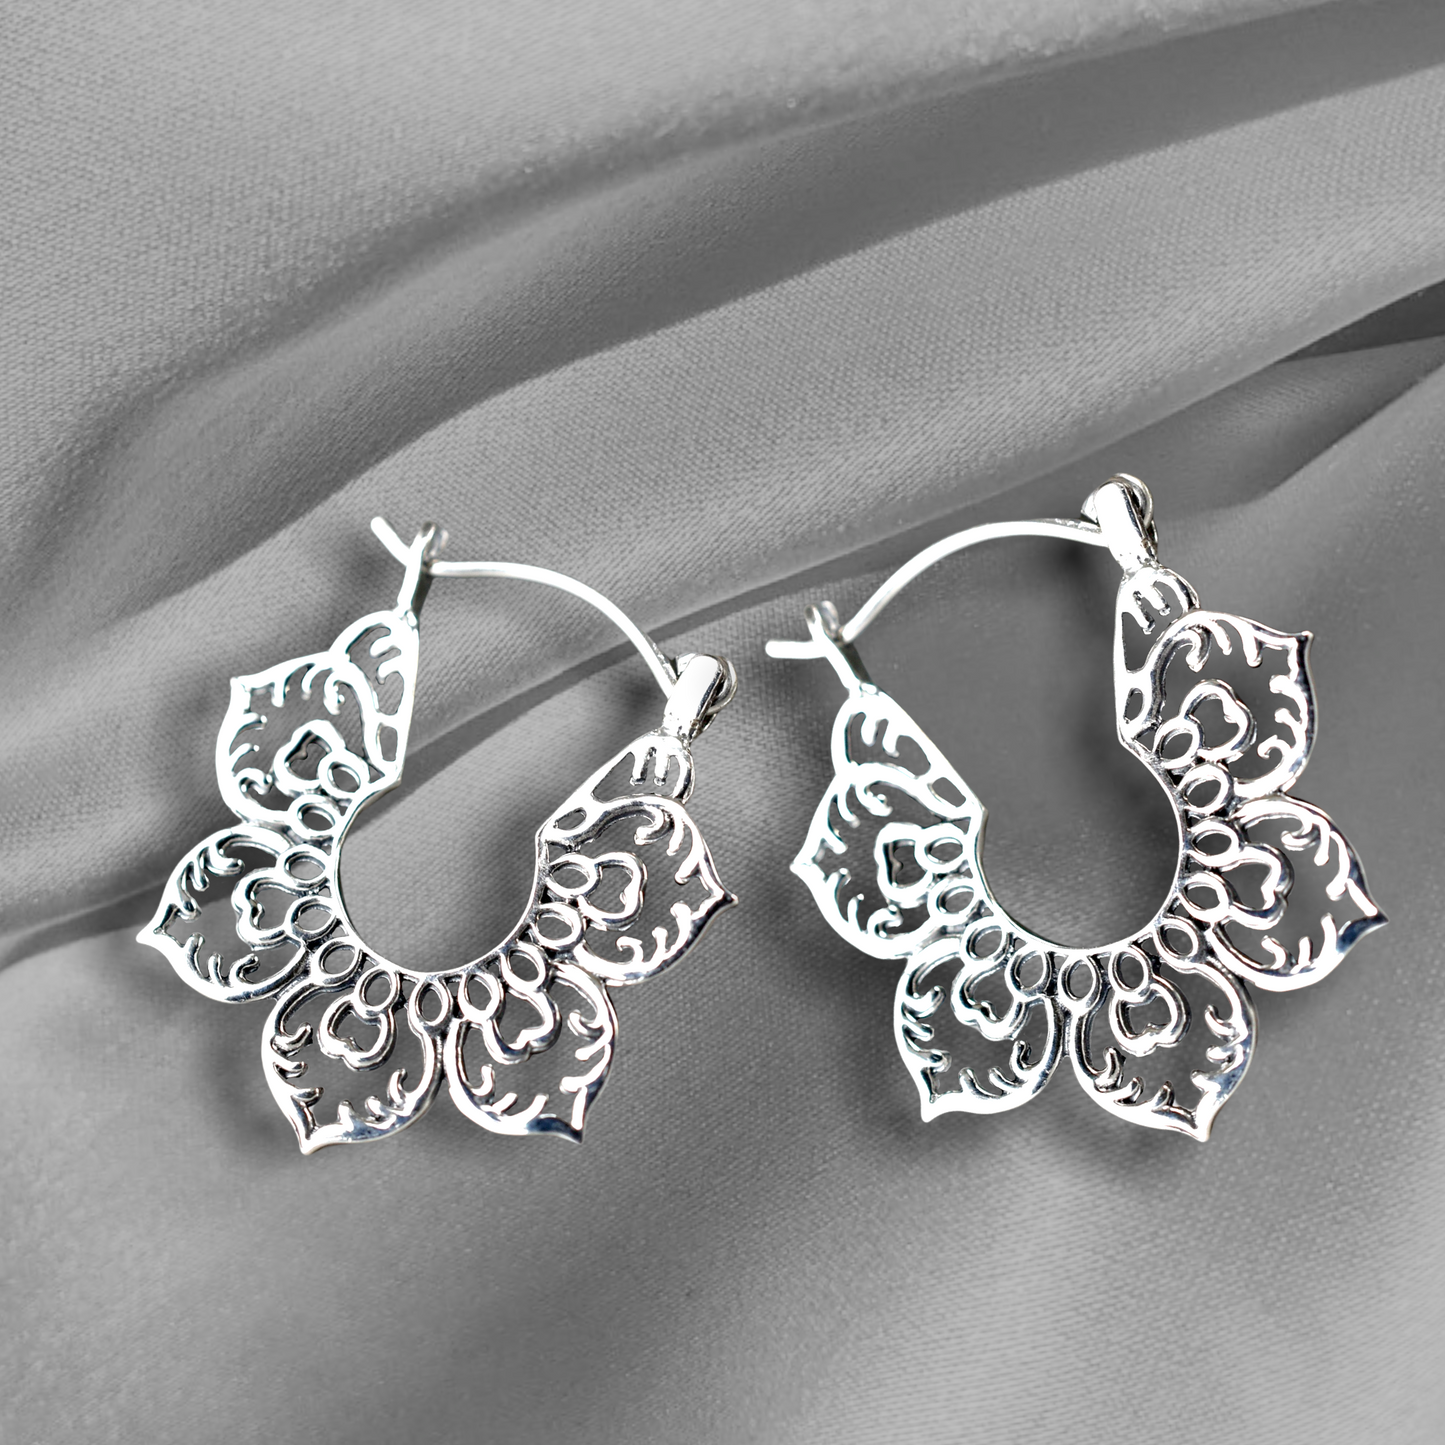 925 silver earrings karma III - Ear925-130